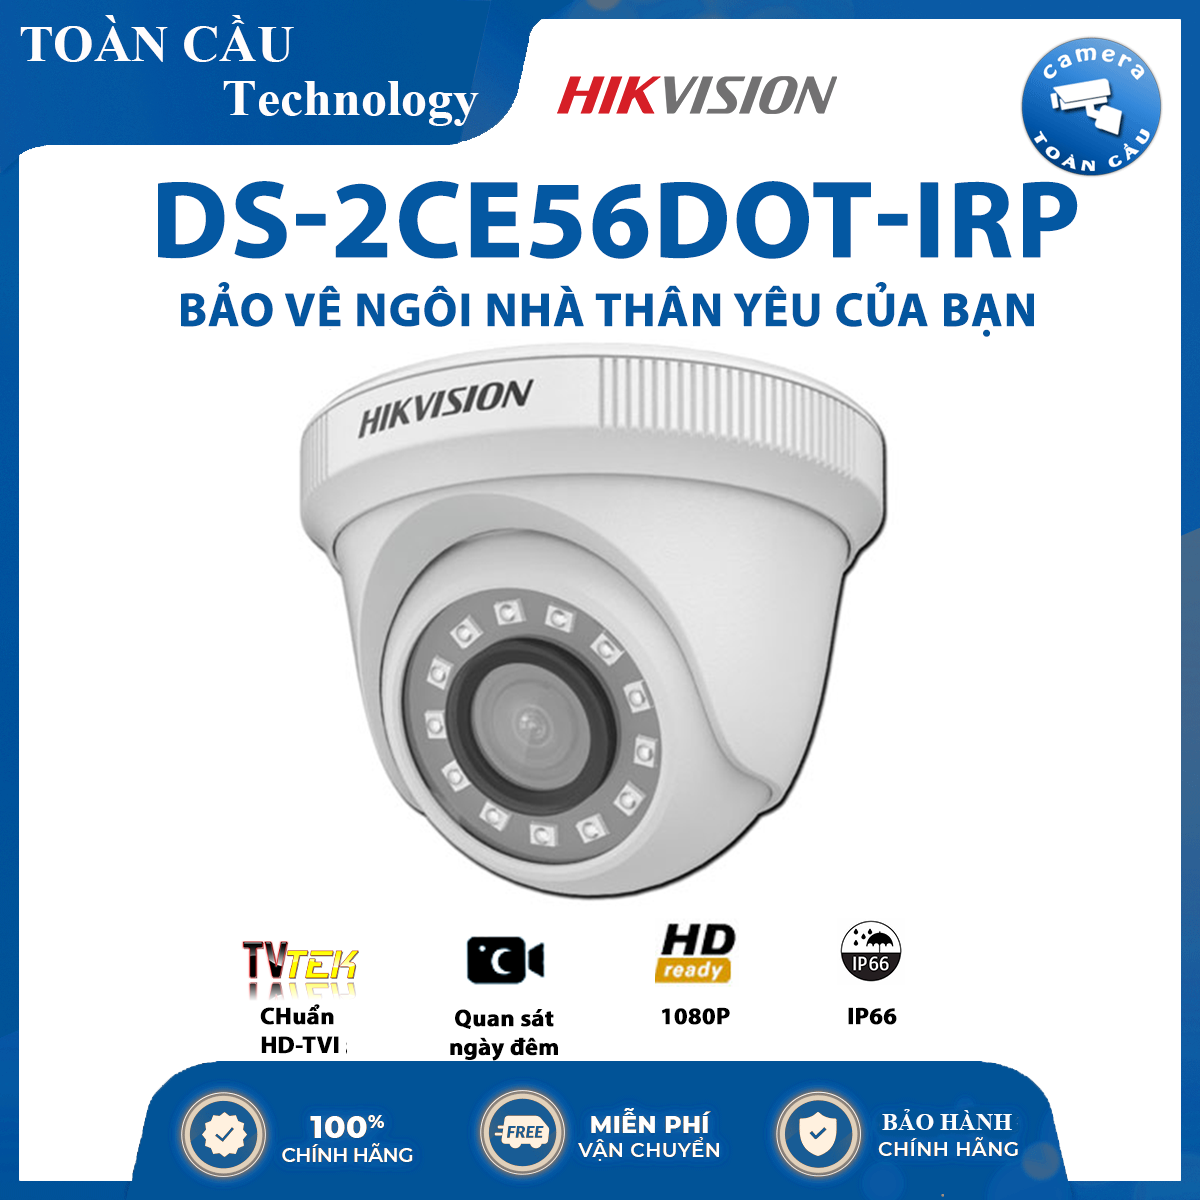 [100% CHÍNH HÃNG] Camera hồng ngoại thông minh HD-TVI Hikvision DS-2CE56D0T-IRP hồng ngoại 20m 2MP HD1080p, cảm biến CMOS 2Mp - Camera Toàn Cầu